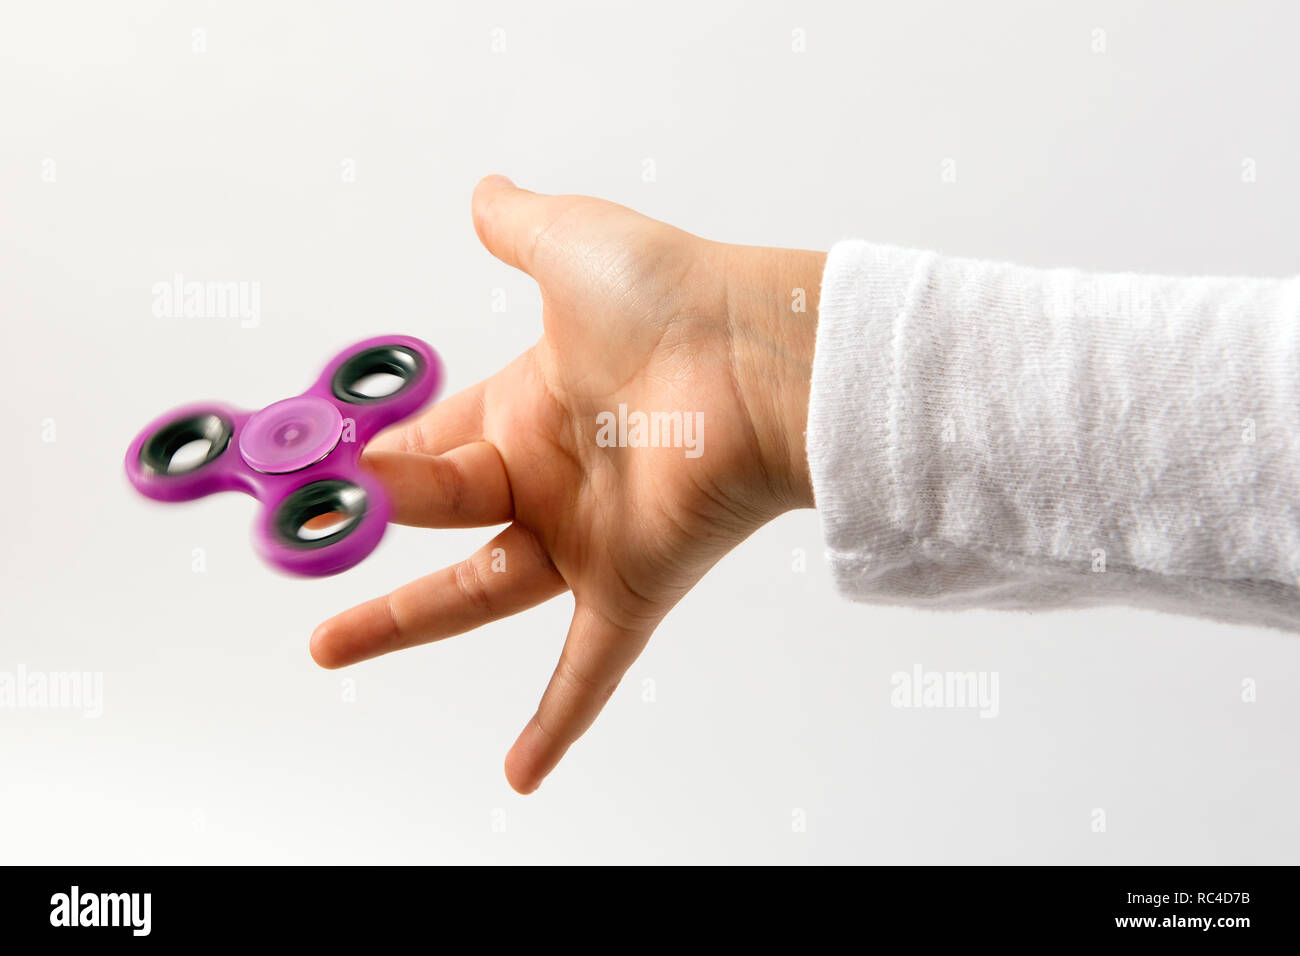 Spinner violet toy tournant sur les enfants du doigt. Côté vue en gros plan sur fond blanc Banque D'Images